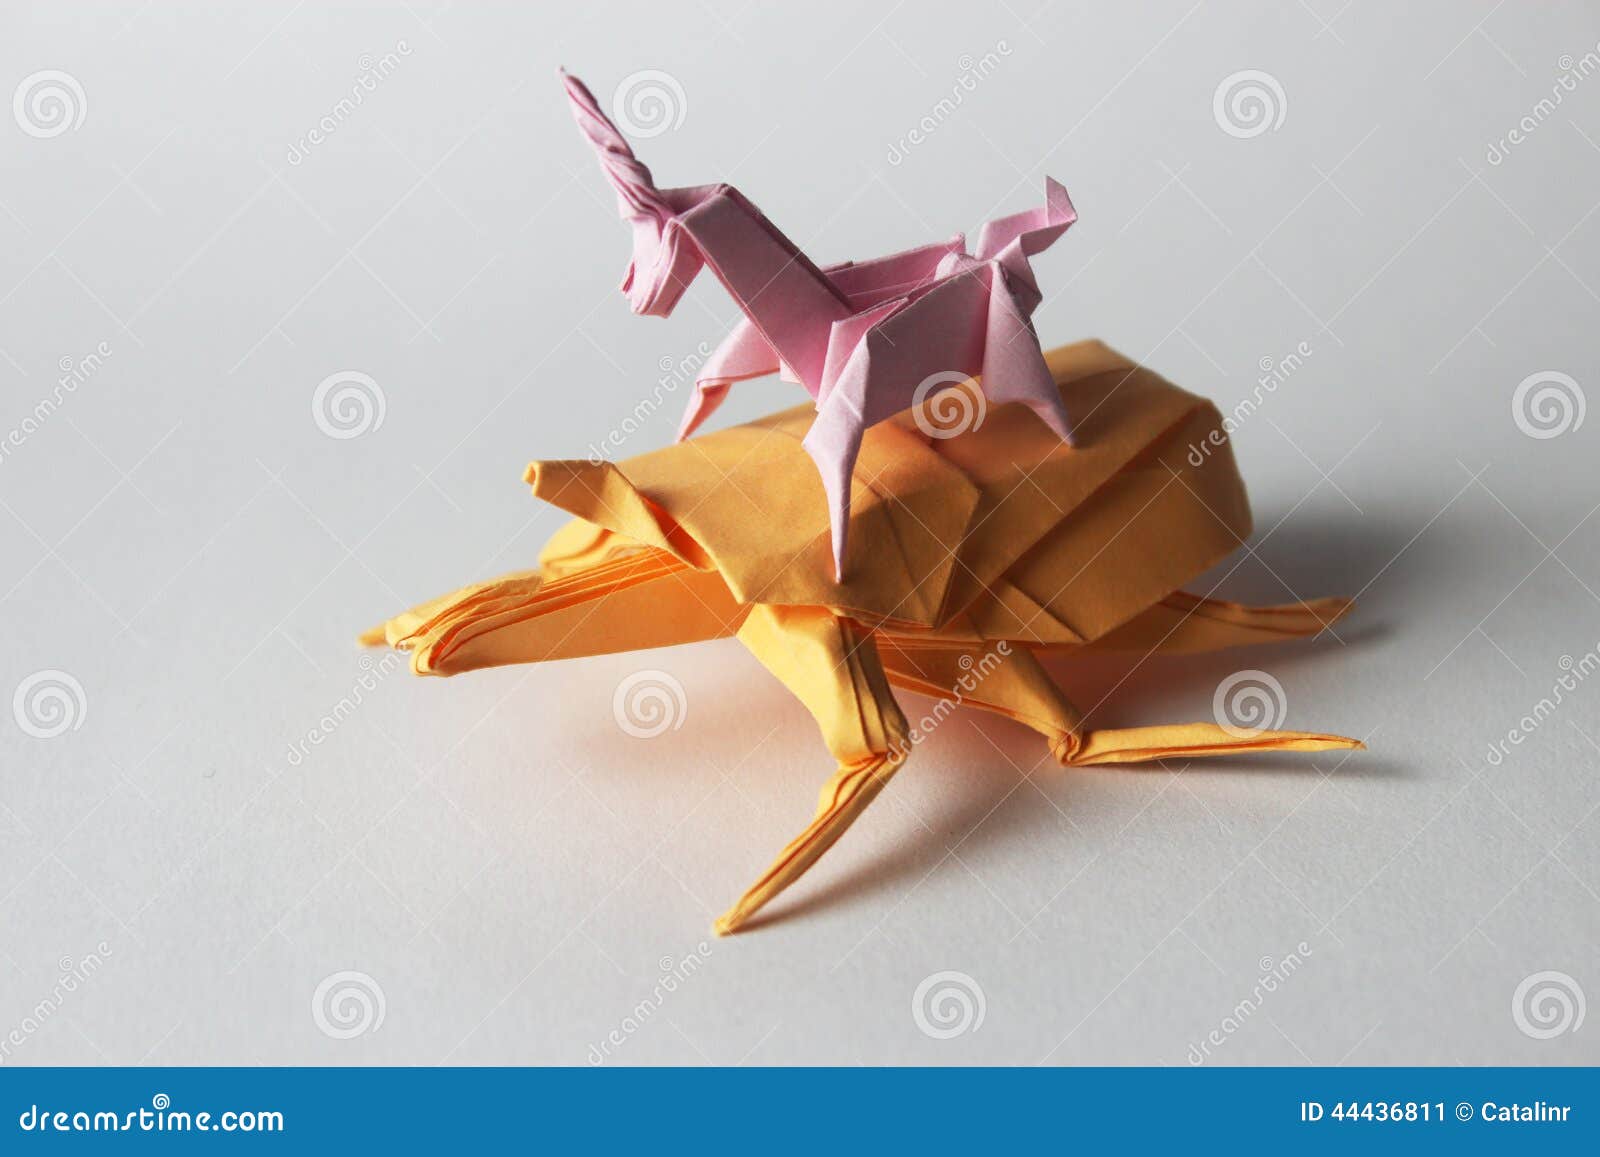 Origami Unicorn Riding Origami Bug Stock Image - Image of crazy, icon ...